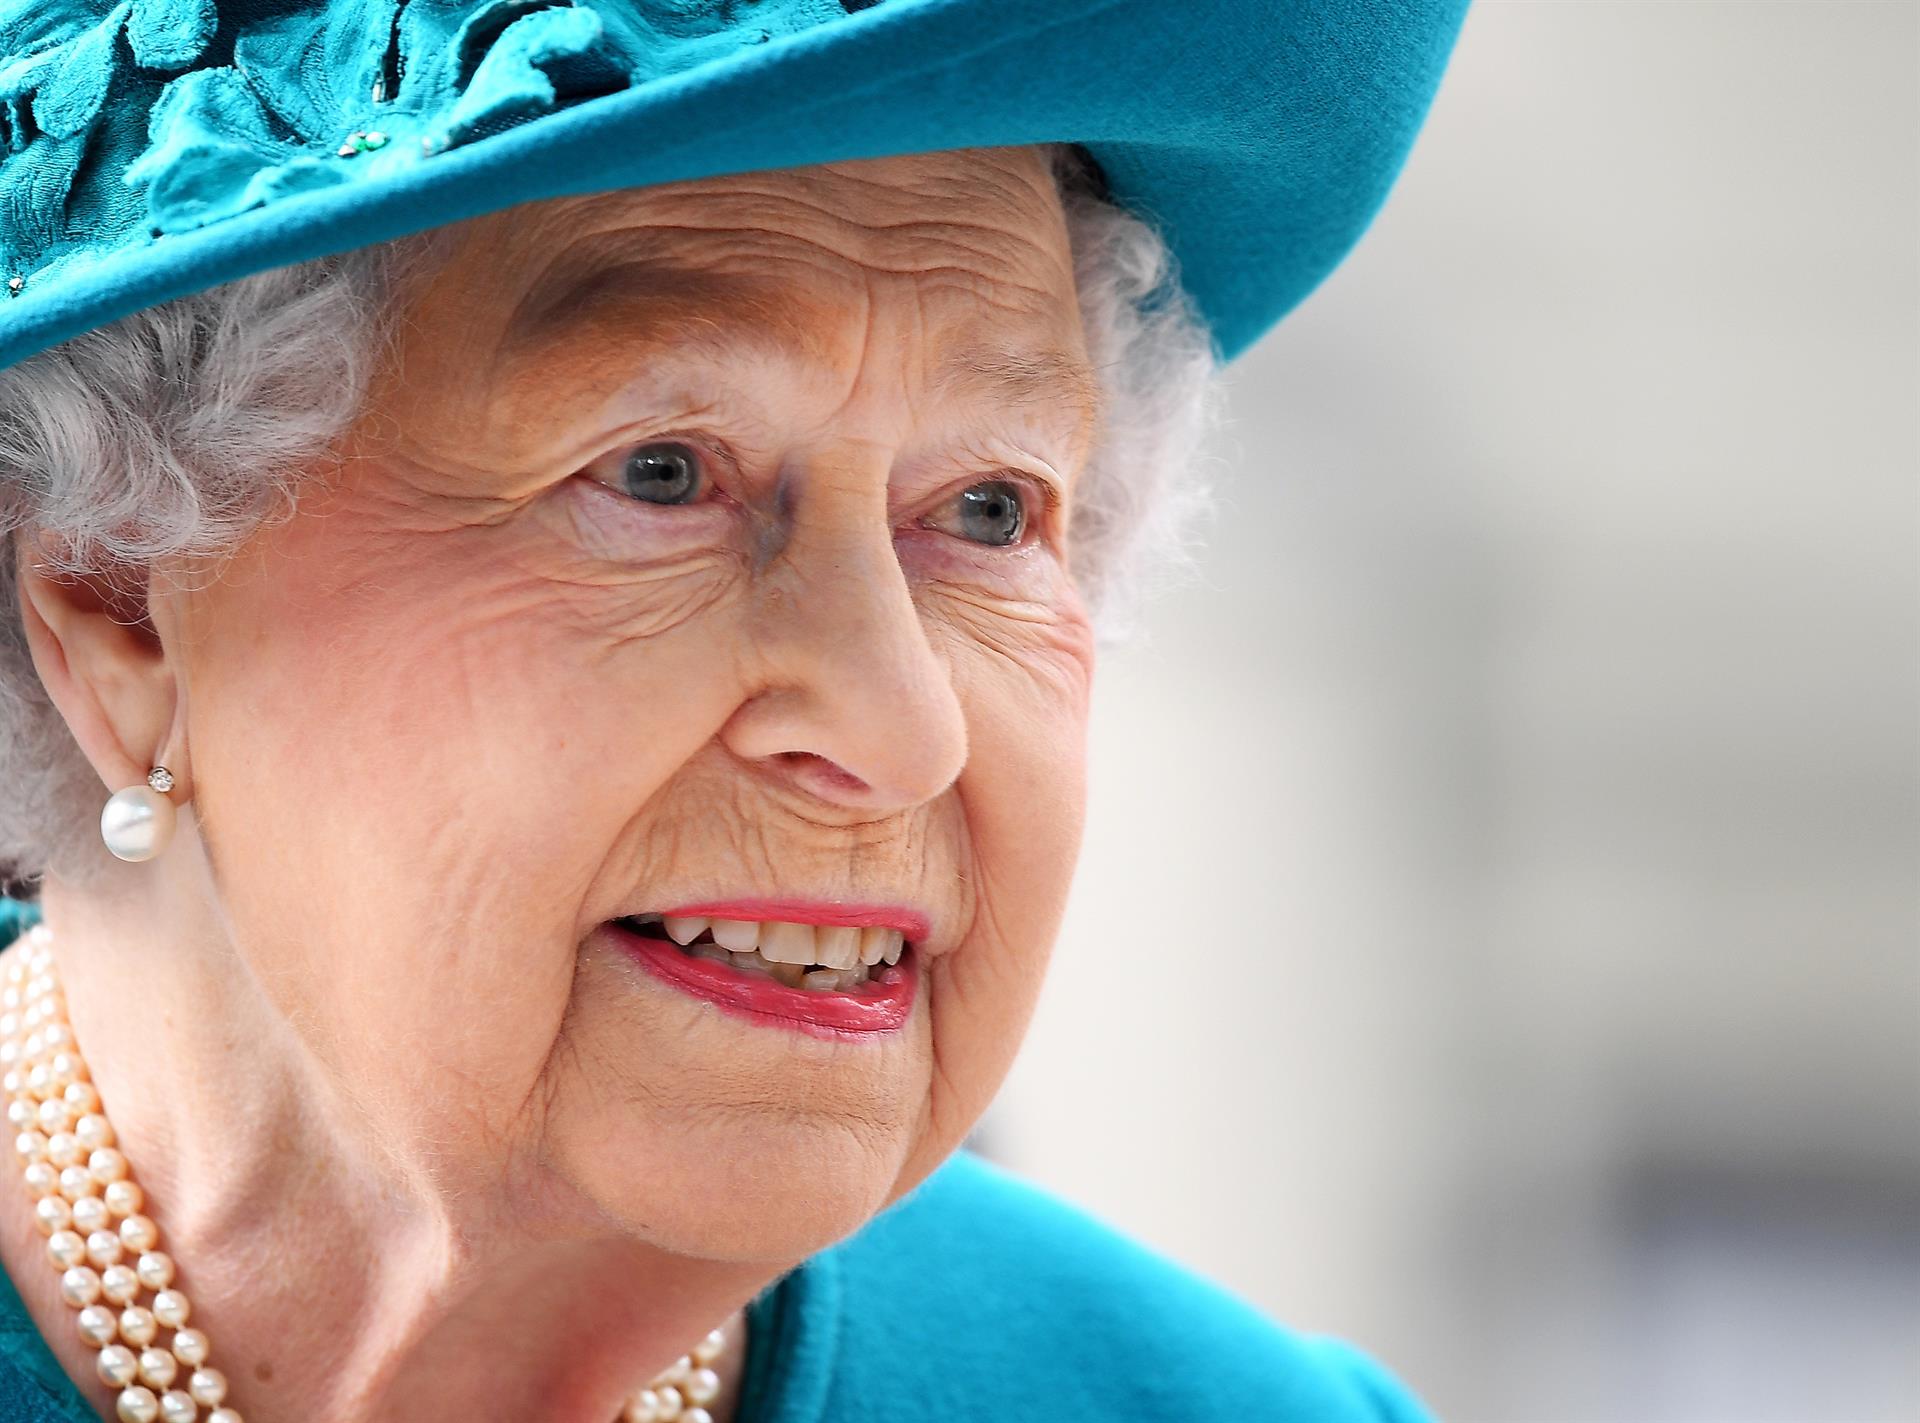 El tratamiento de Isabel II podría incluir antivirales, según medios locales